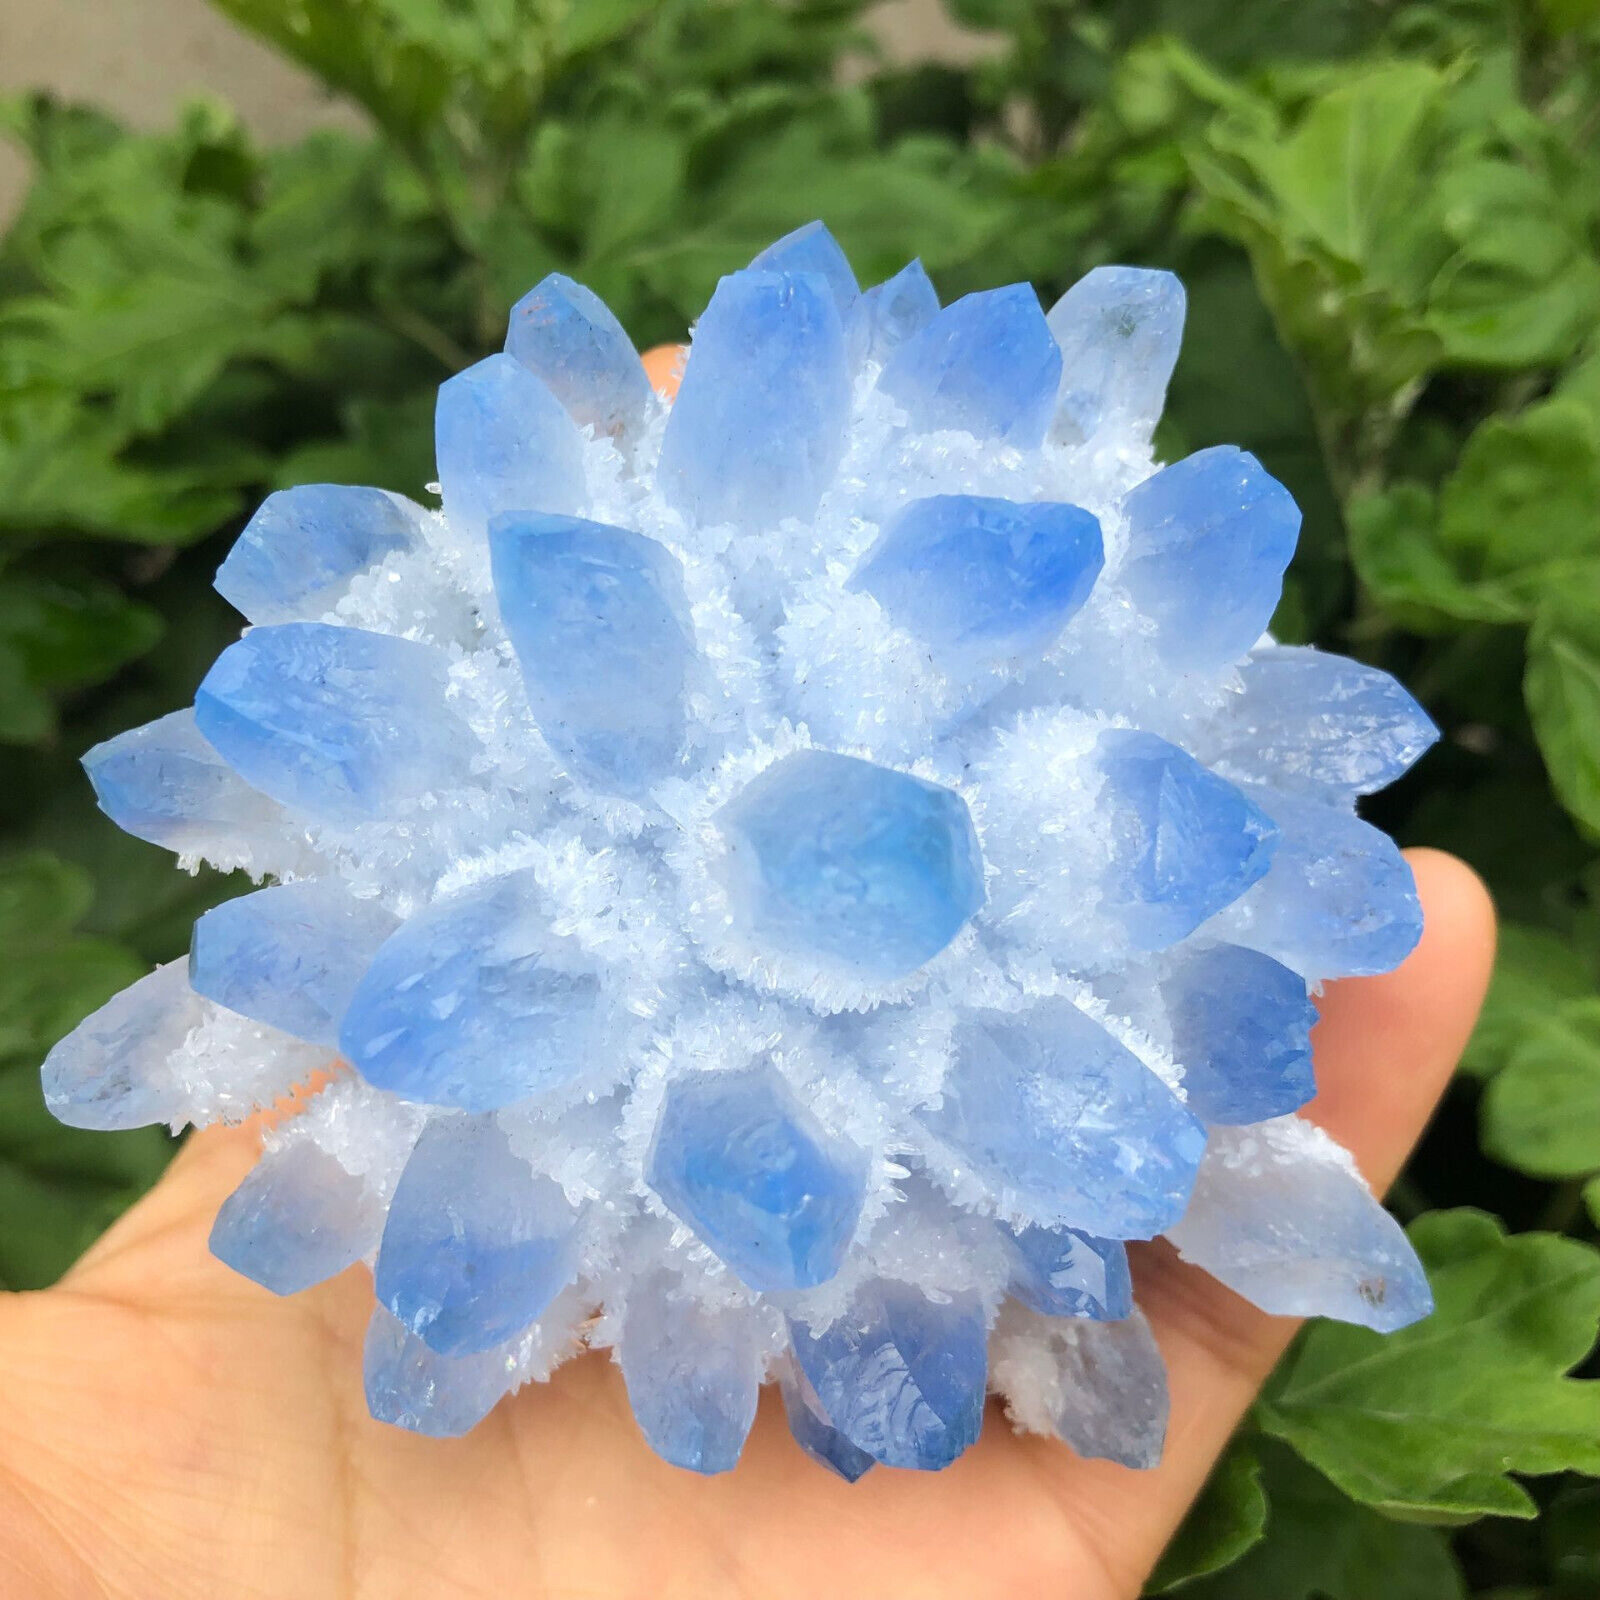 300g+ New Find Blue Phantom Quartz Crystal Cluster Mineral Specimen Healing Gift